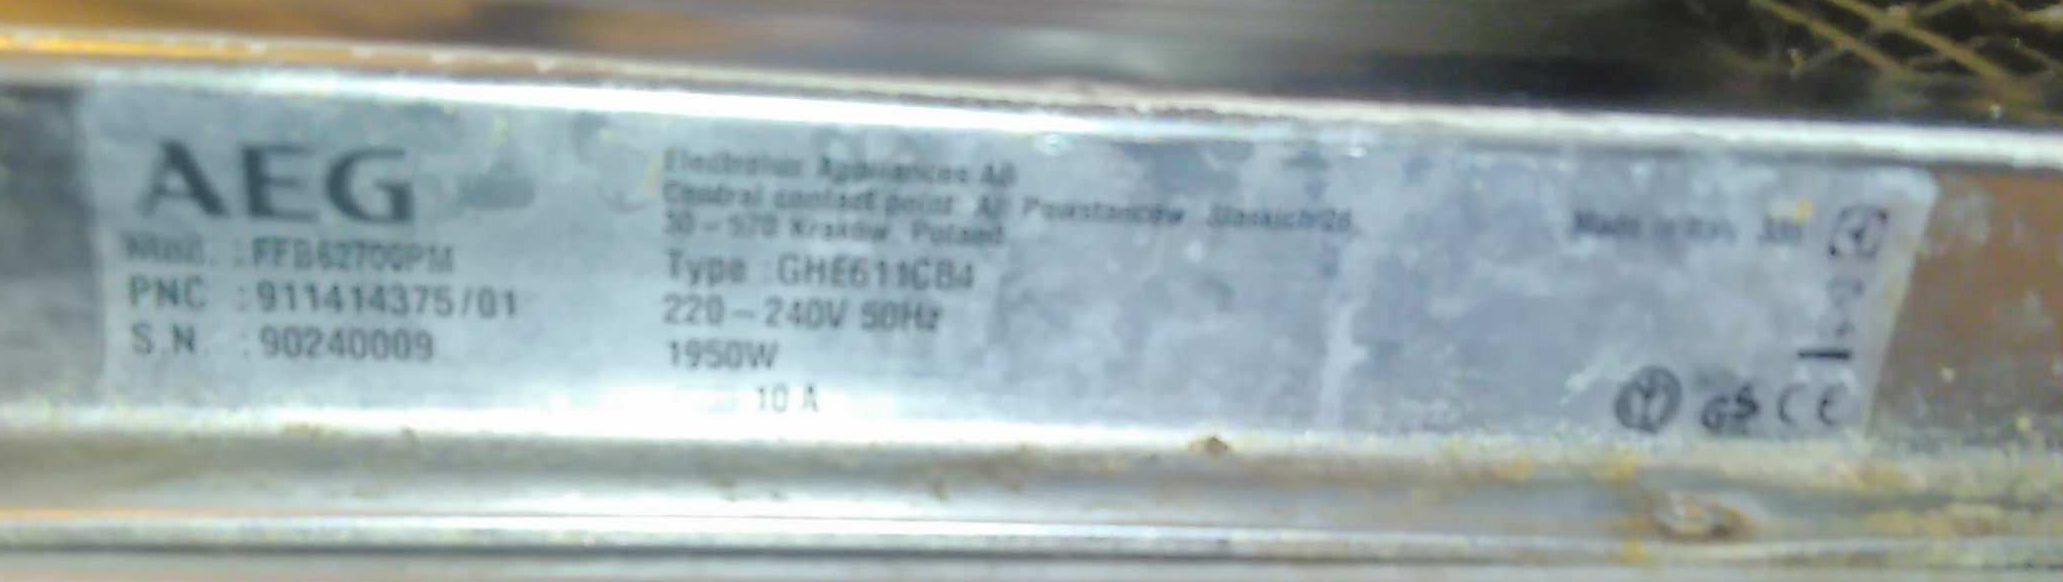 Tabliczka znamionowa zmywarki AEG FFB62700PM typ GHE611CB4 PNC 91141437501